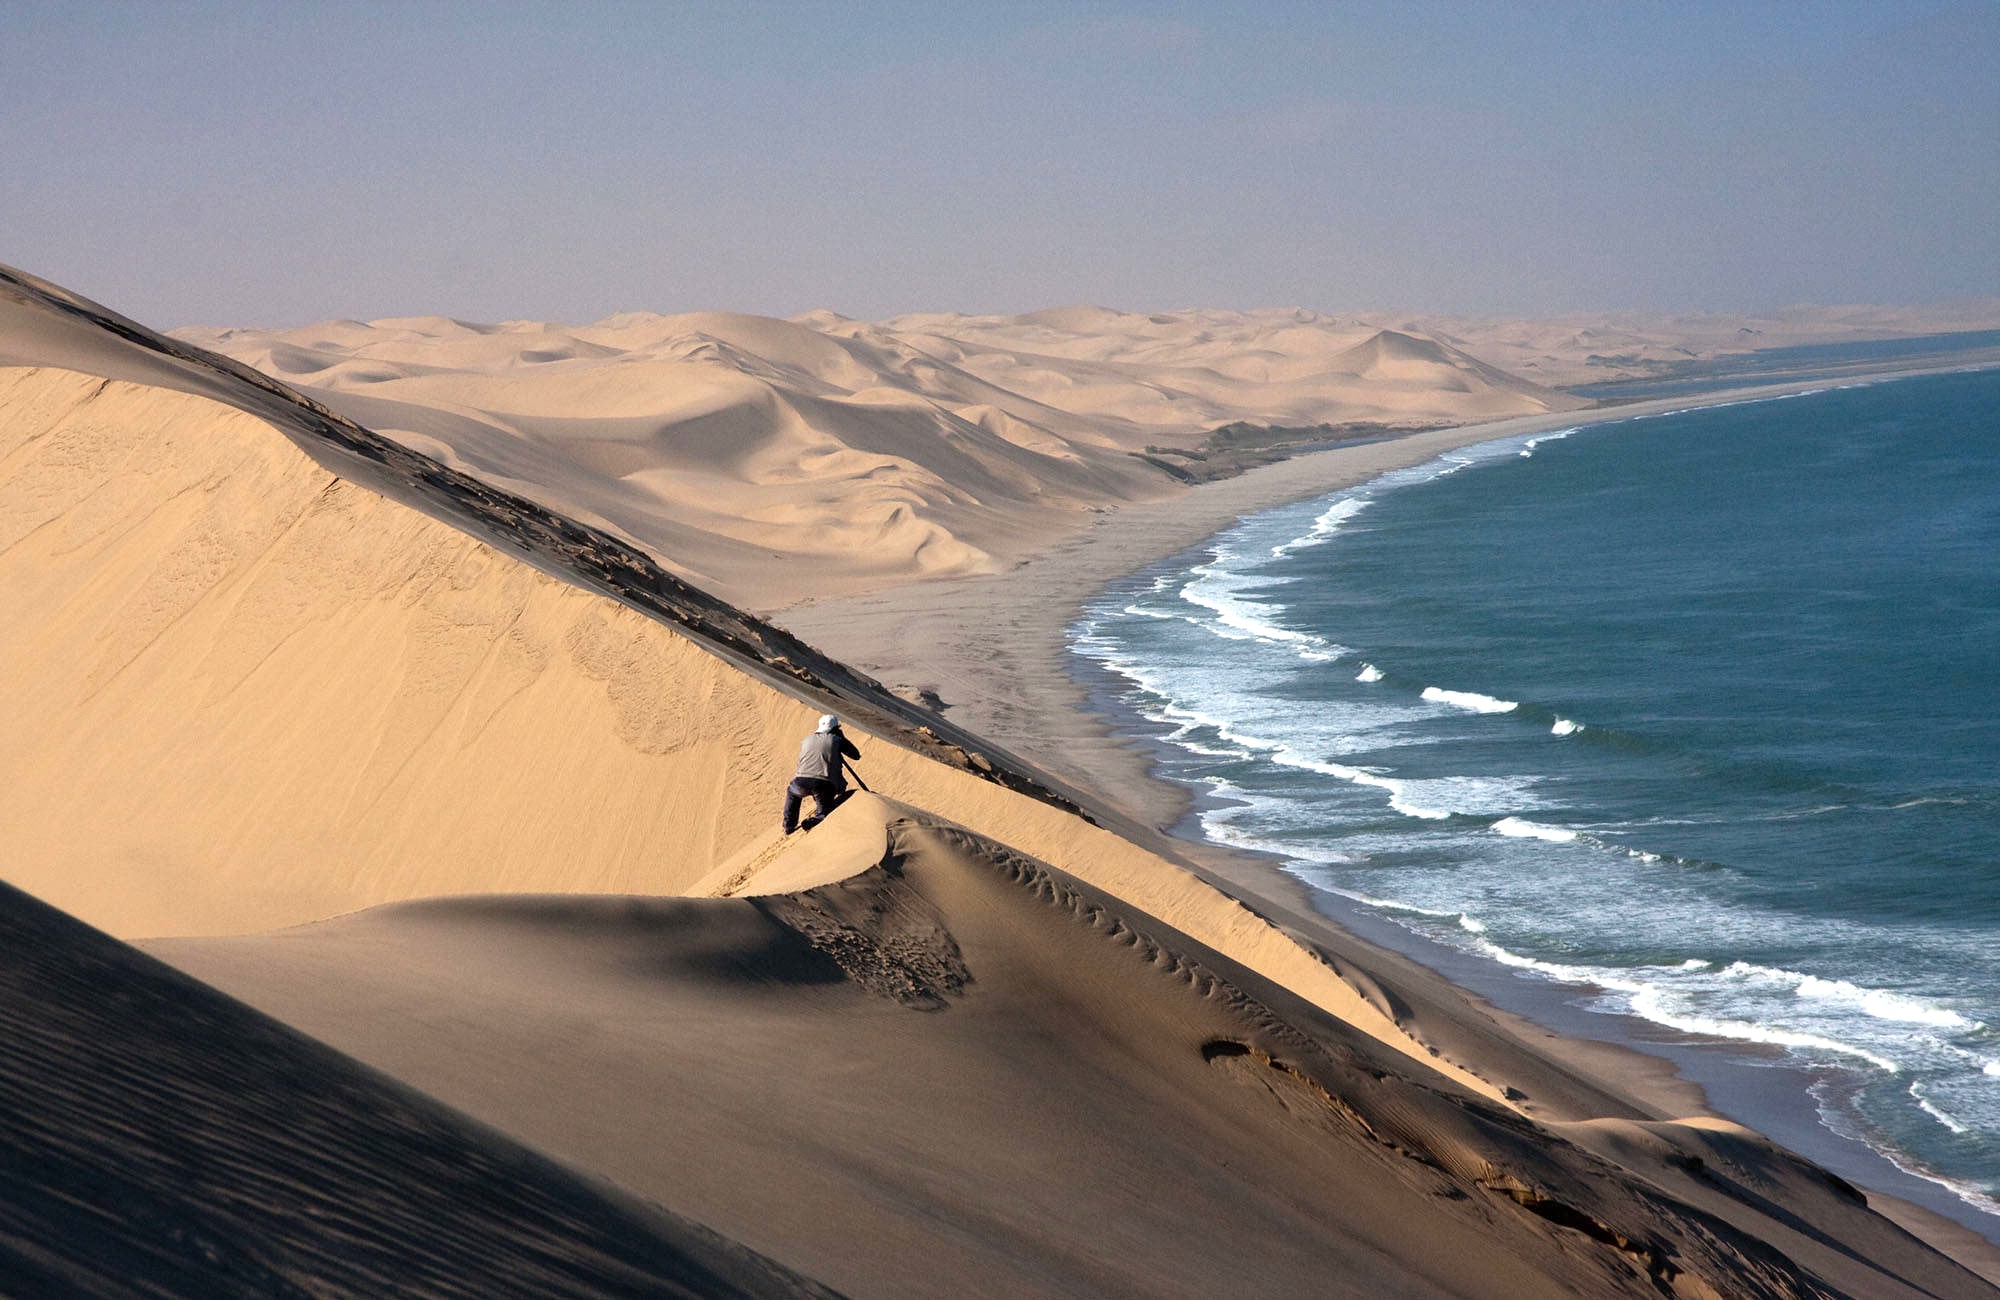 Dune meets ocean view